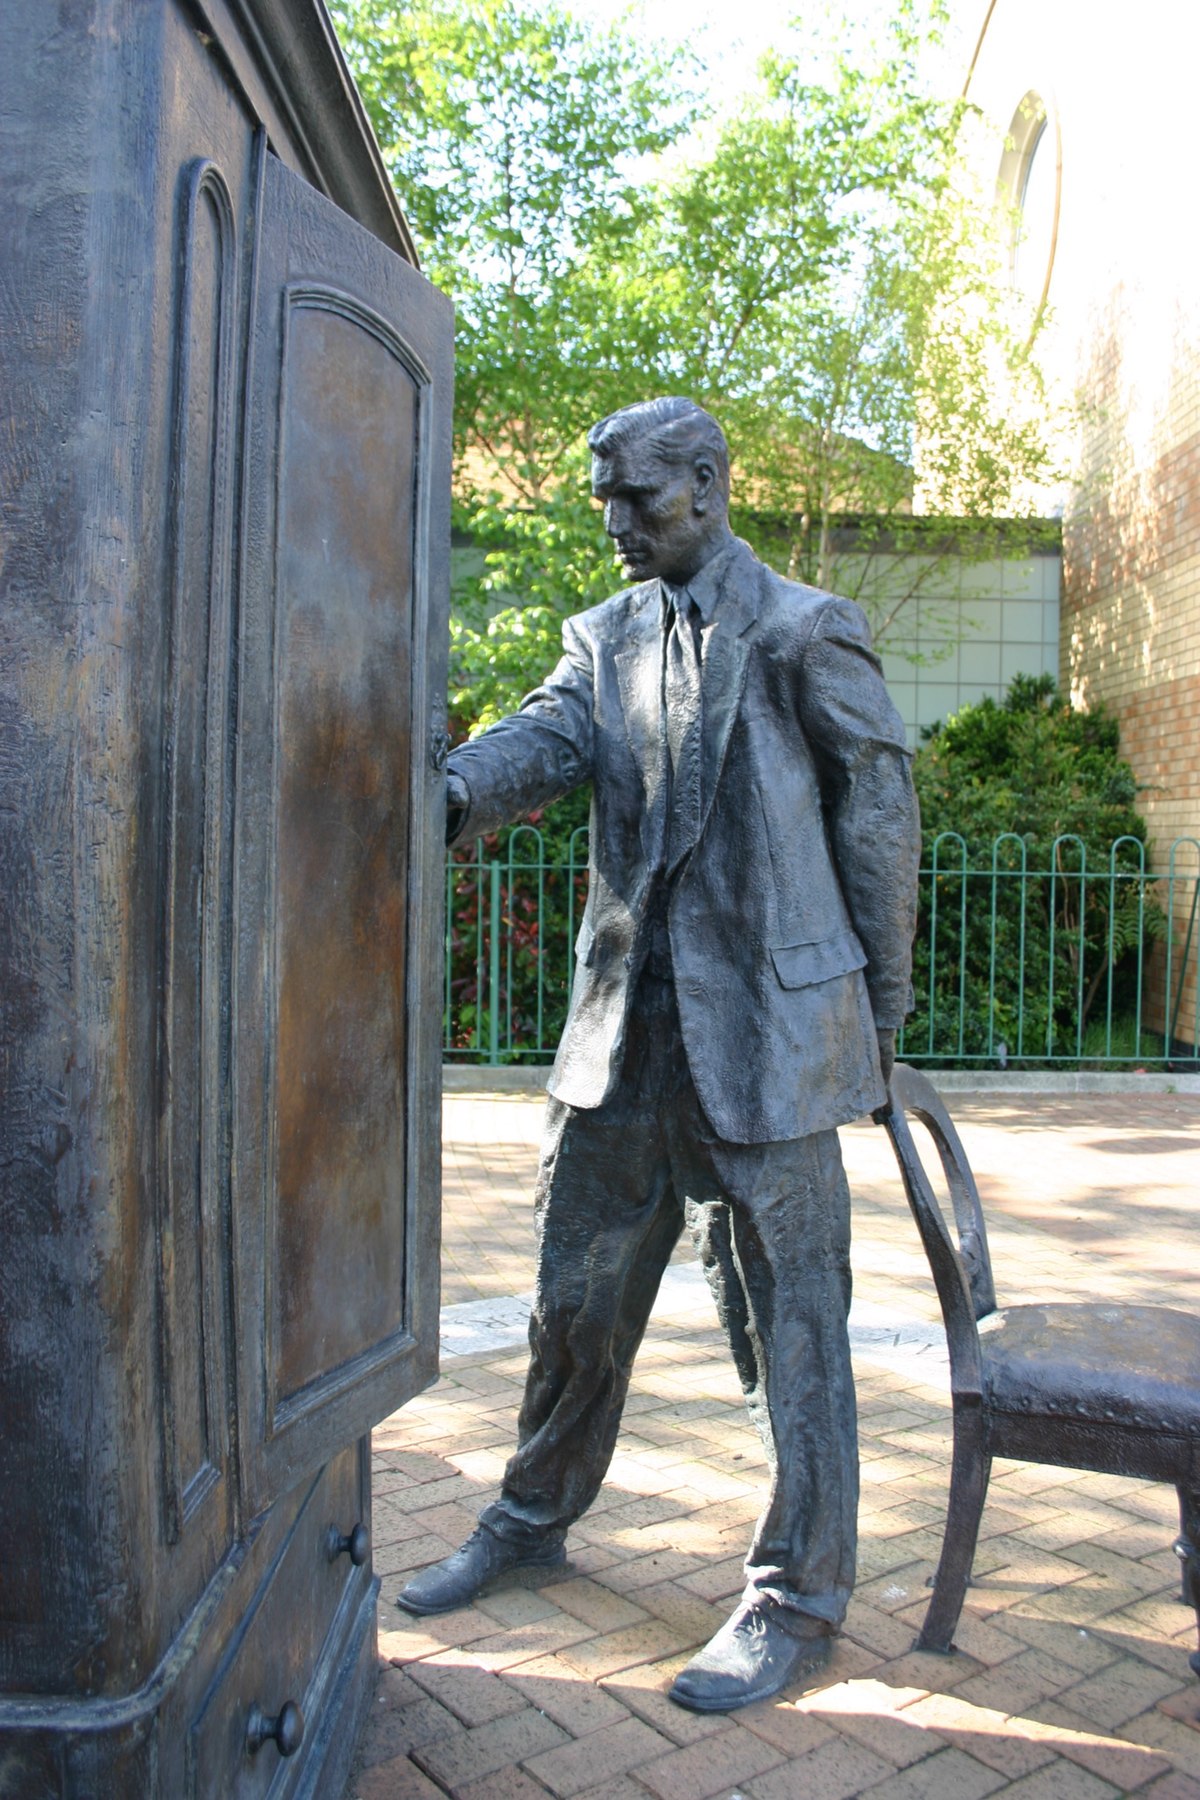 Statue de C.S. Lewis à Belfast. Il est représenté ouvrant une armoire, allusion au Lion, la Sorcière blanche et l'Armoire magique